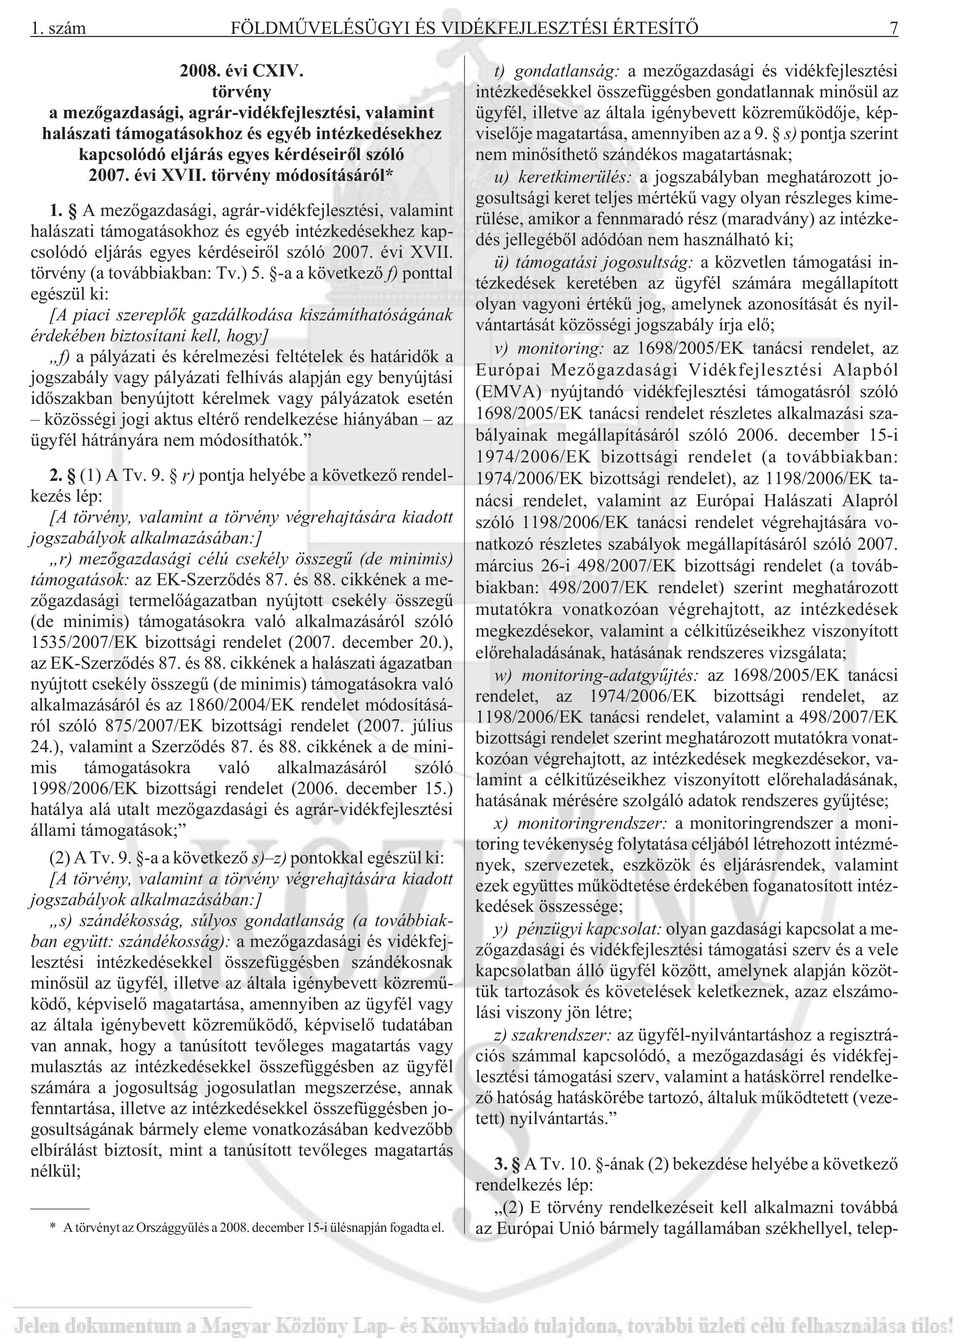 A mezõgazdasági, agrár-vidékfejlesztési, valamint halászati támogatásokhoz és egyéb intézkedésekhez kapcsolódó eljárás egyes kérdéseirõl szóló 2007. évi XVII. törvény (a továbbiakban: Tv.) 5.